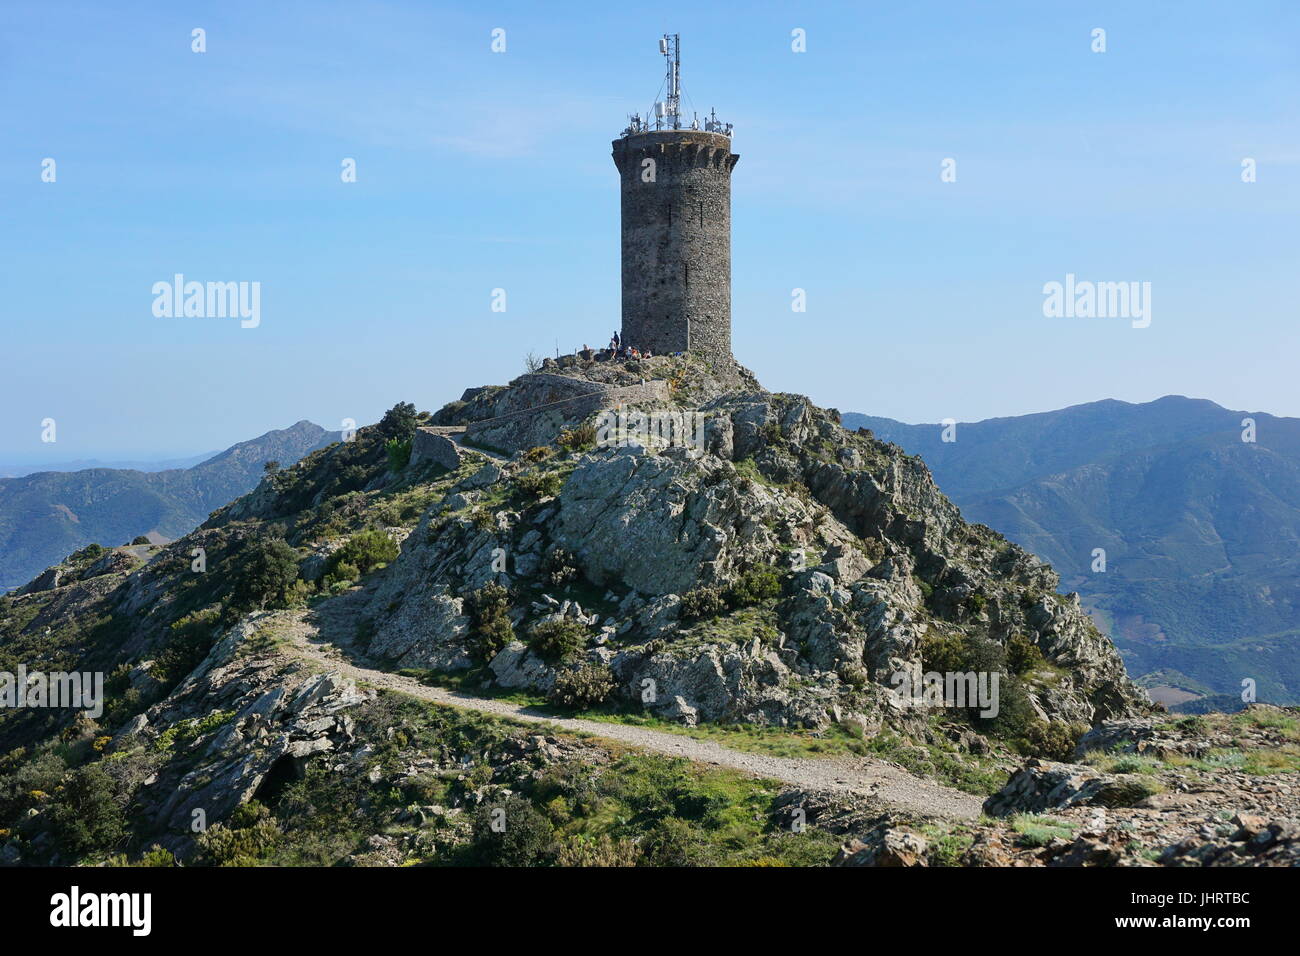 La tour de guet médiévale la Madeloc old stone tower à environ 650 mètres de hauteur, massif de l'Albera, méditerranée, Pyrénées Orientales, Roussillon, France Banque D'Images